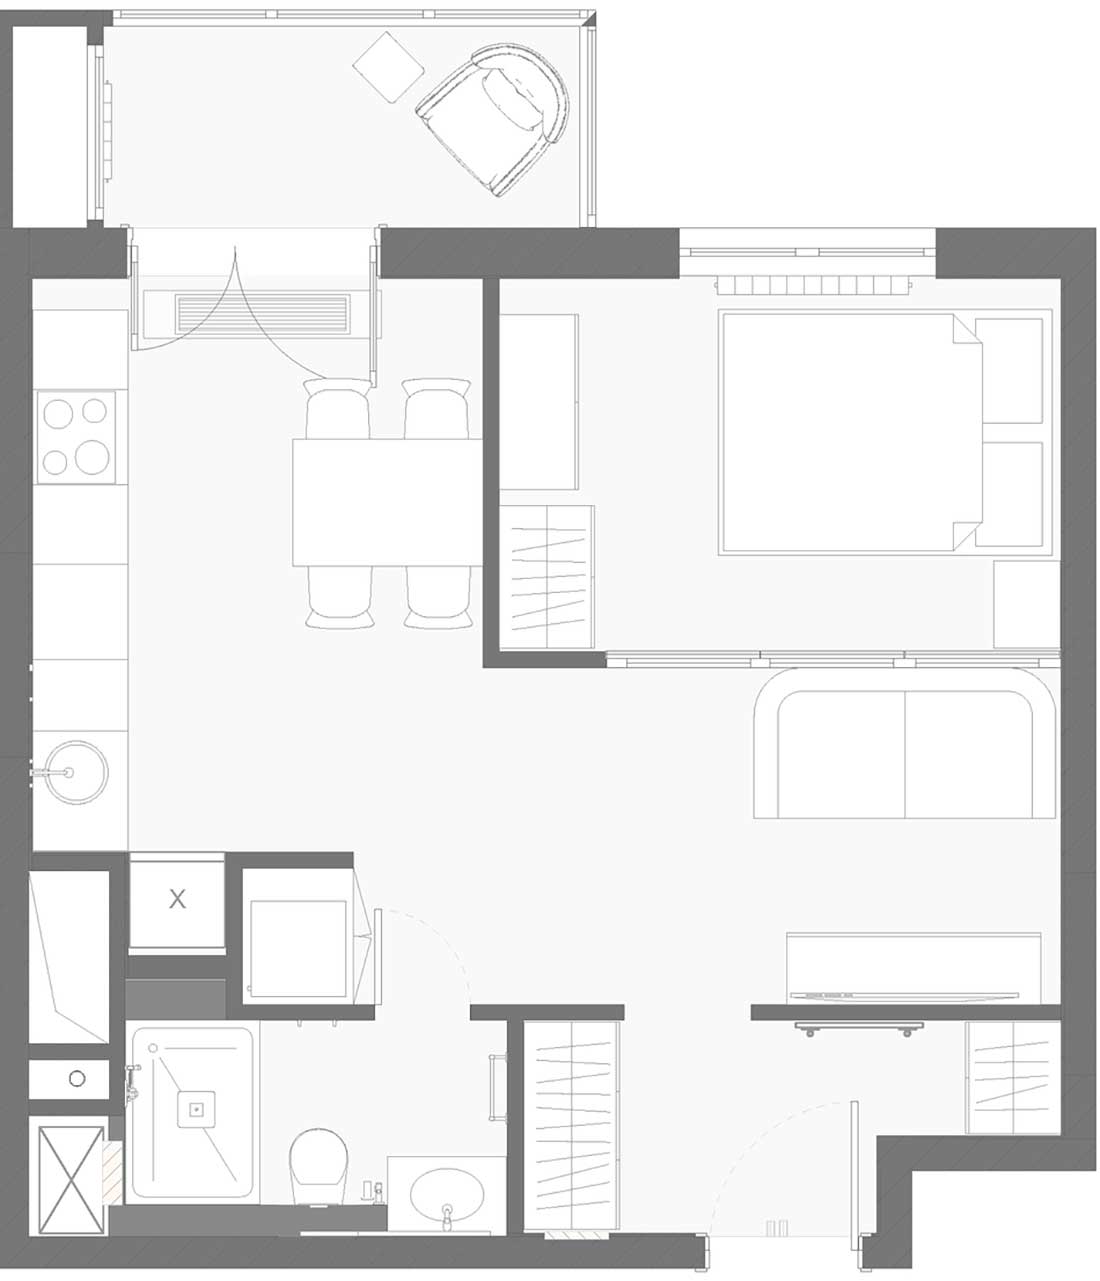 Ízléses, elegáns lakberendezés mindössze 38m2-en - szép, neoklasszikus stílusú enteriőr kis lakásban